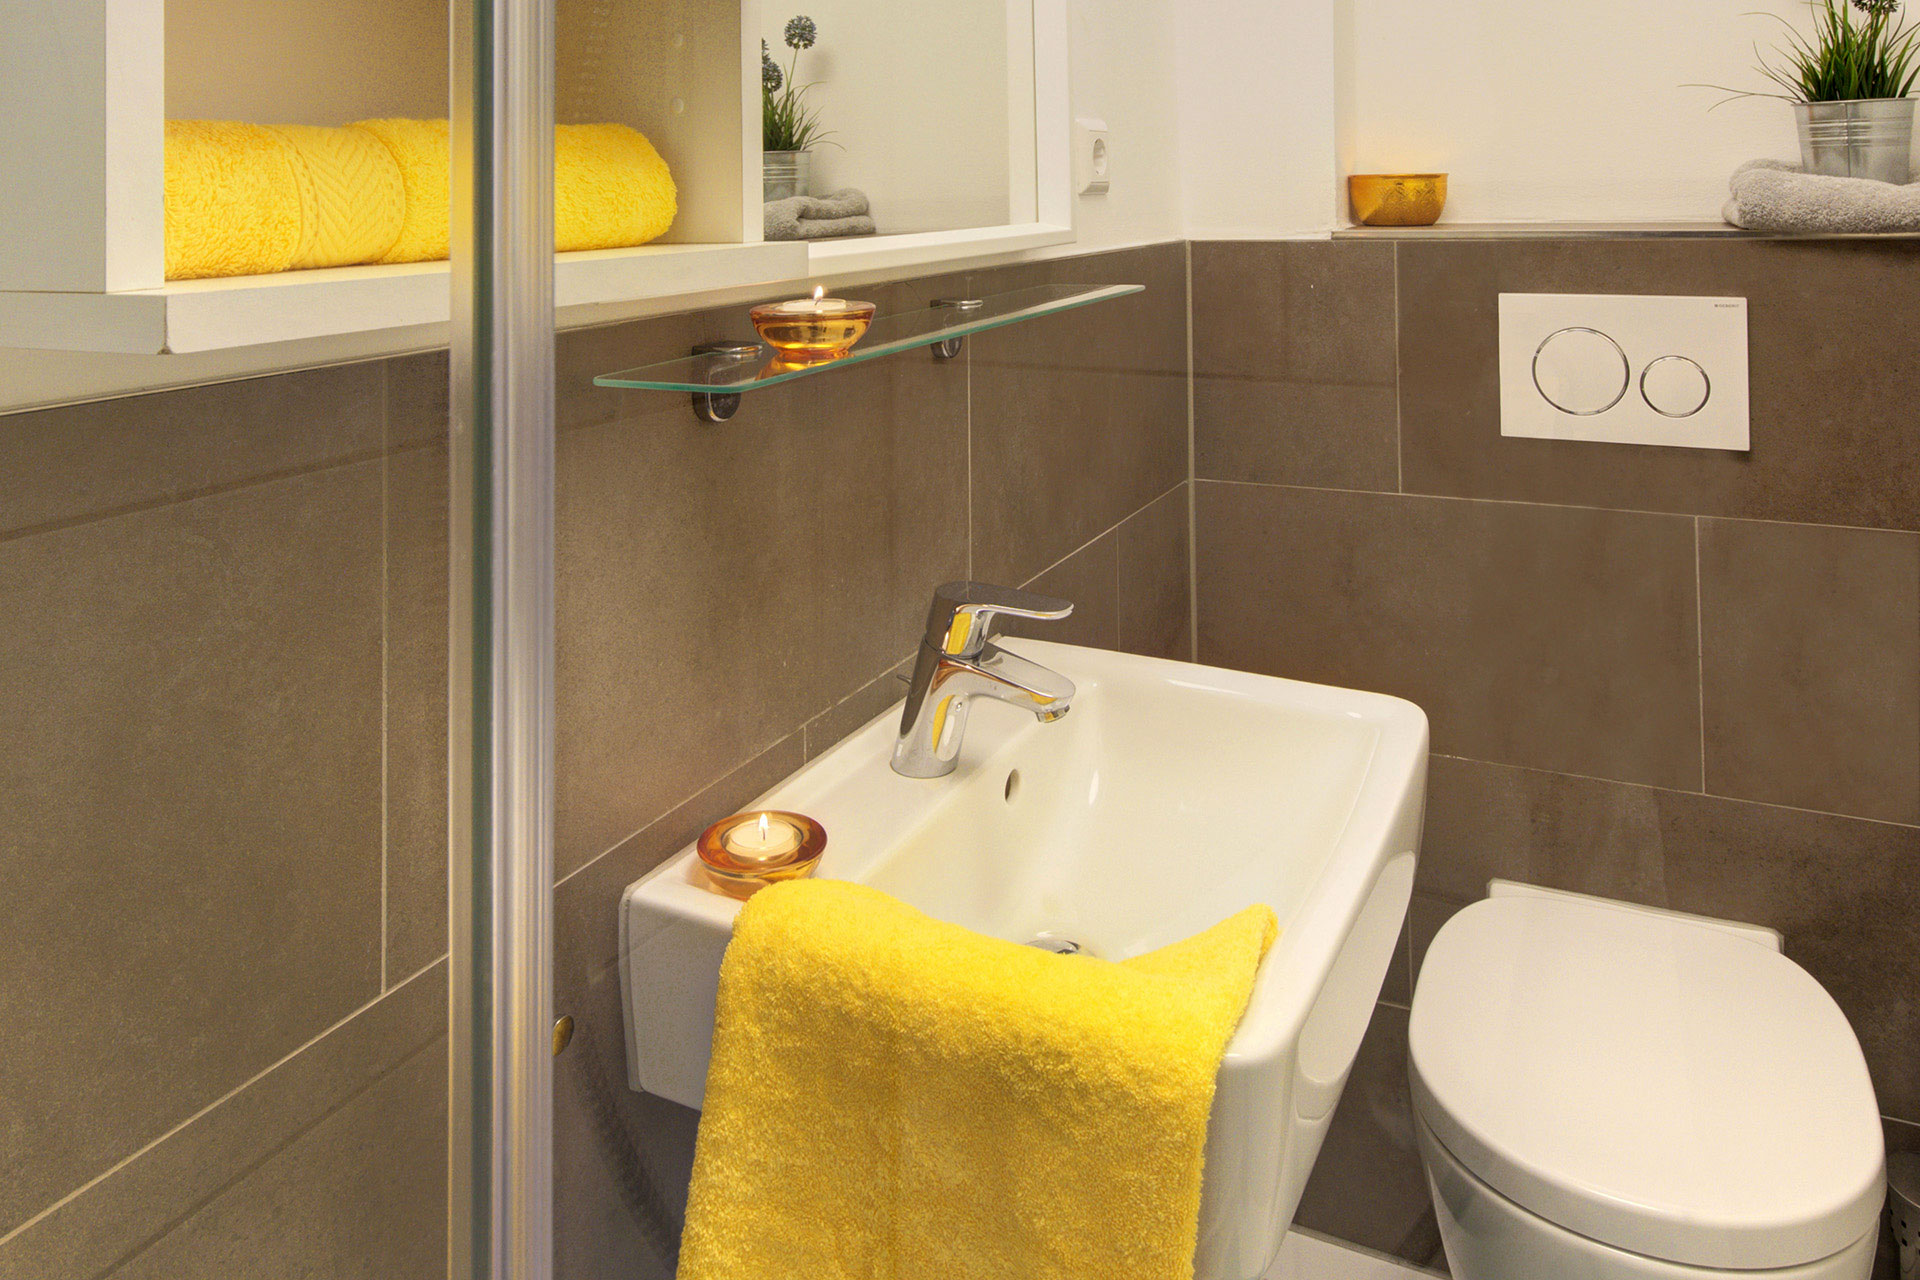 fotografin dekoriert kleines badezimmer mit gelbem handtuch und teelichtern